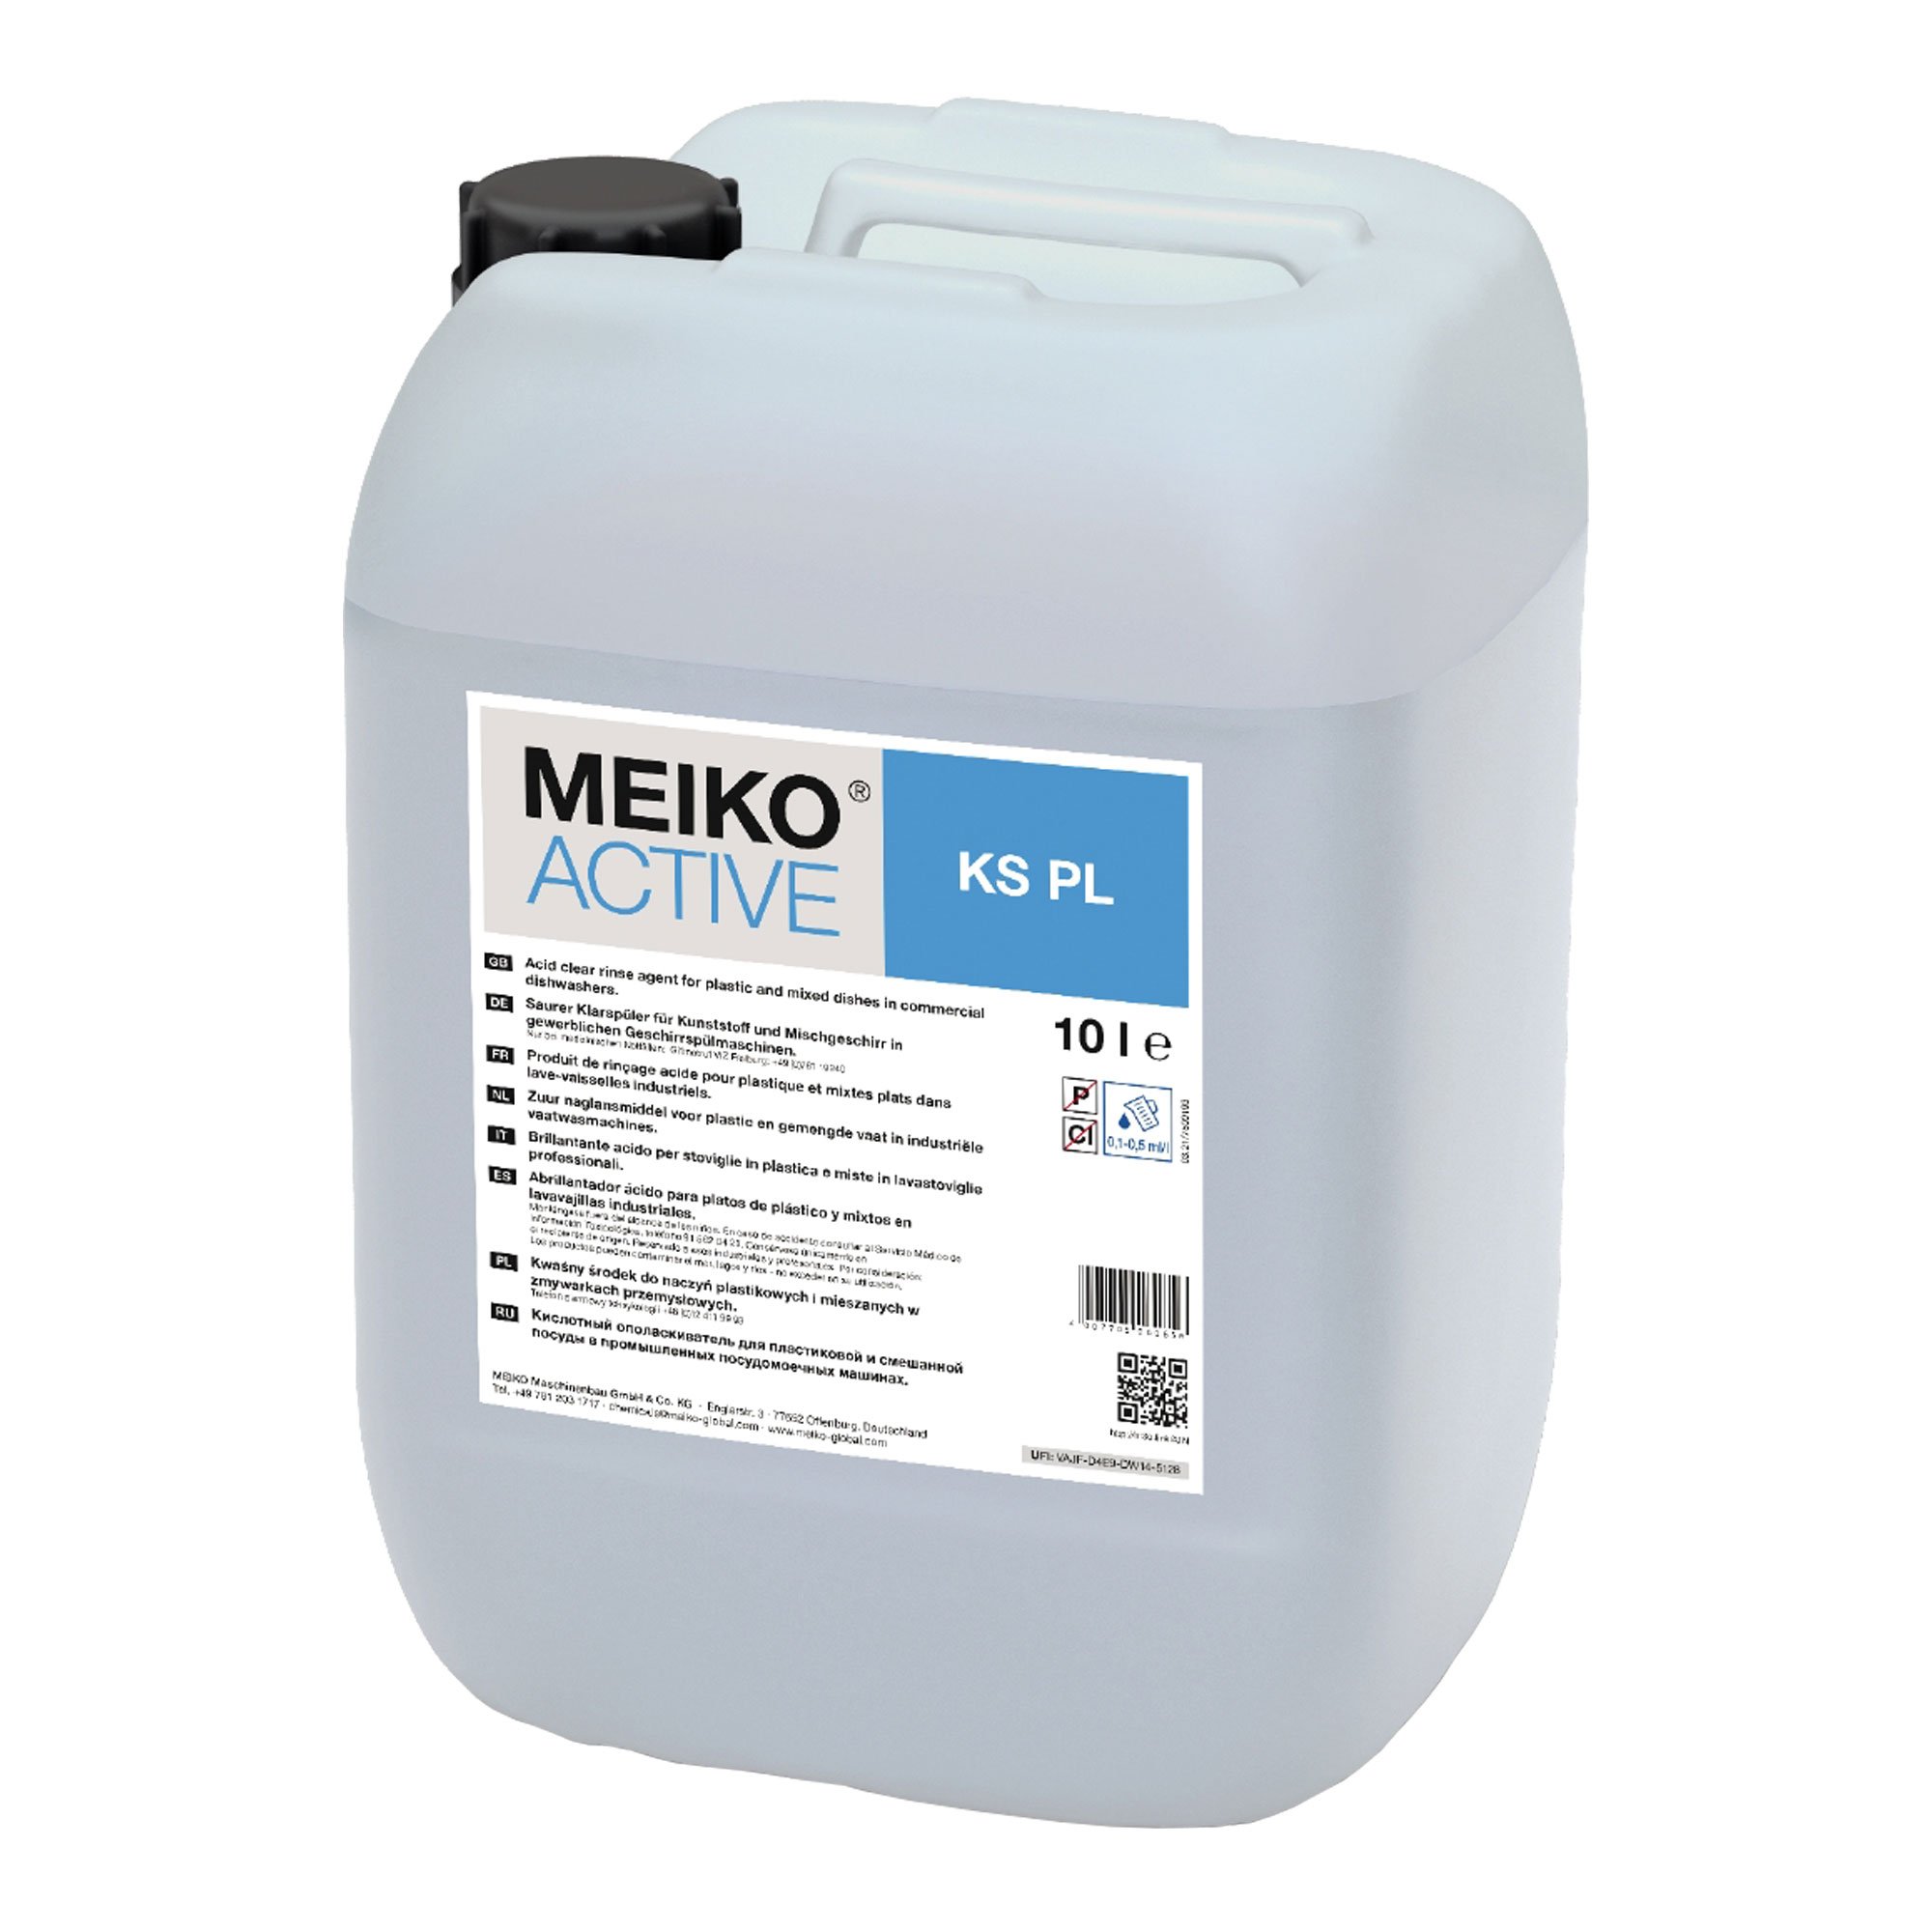 Meiko Active KS PL Spezial-Klarspüler für Kunststoff 